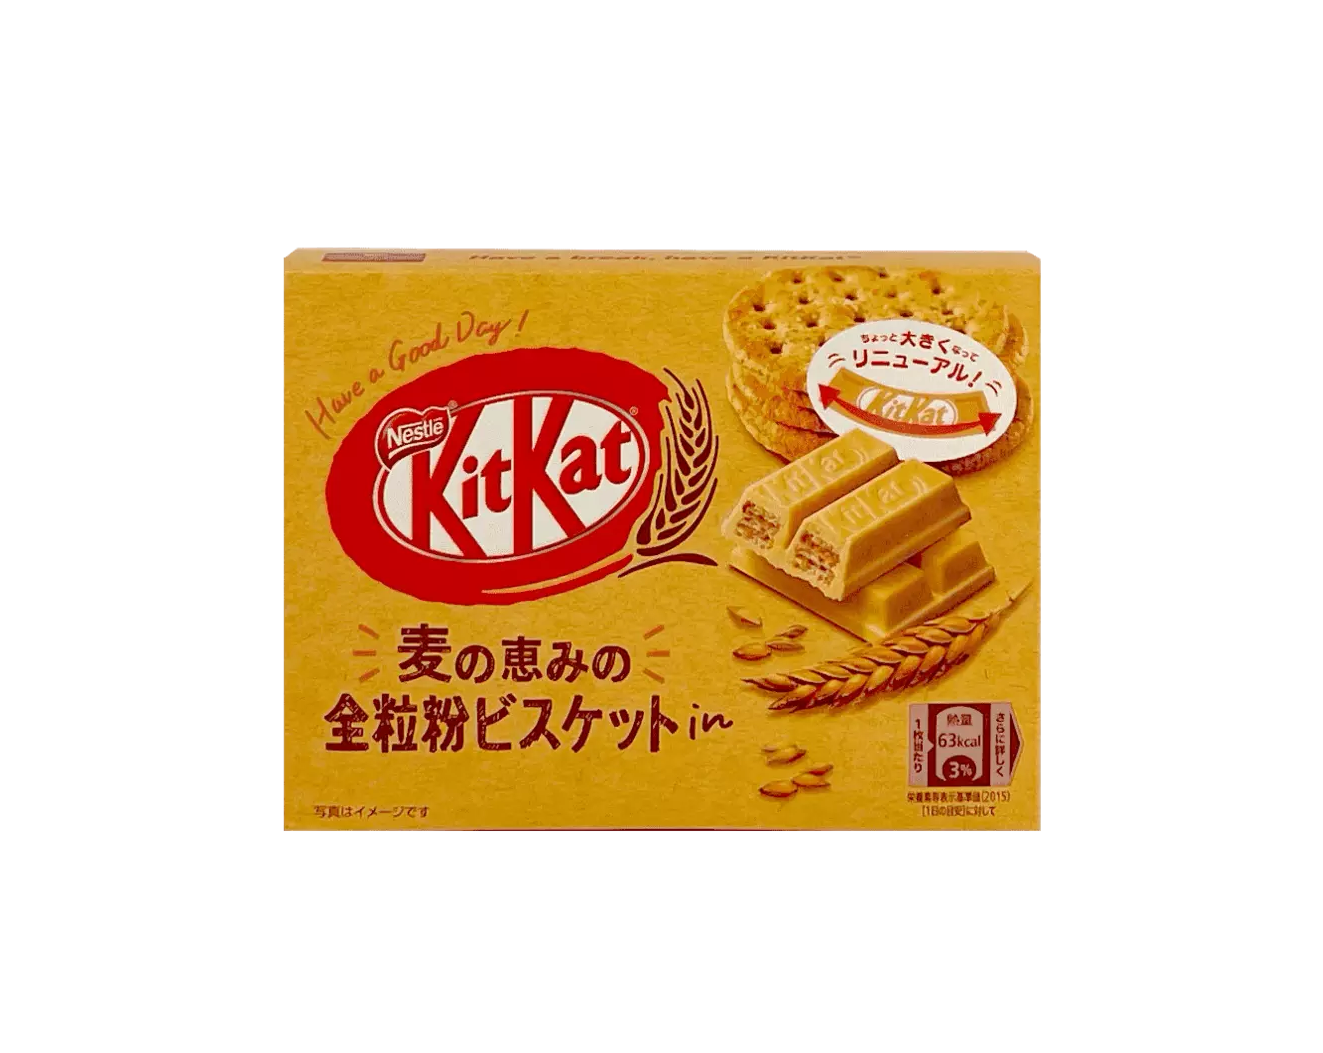 Kitkat Mini Box Fullkornskax Japan